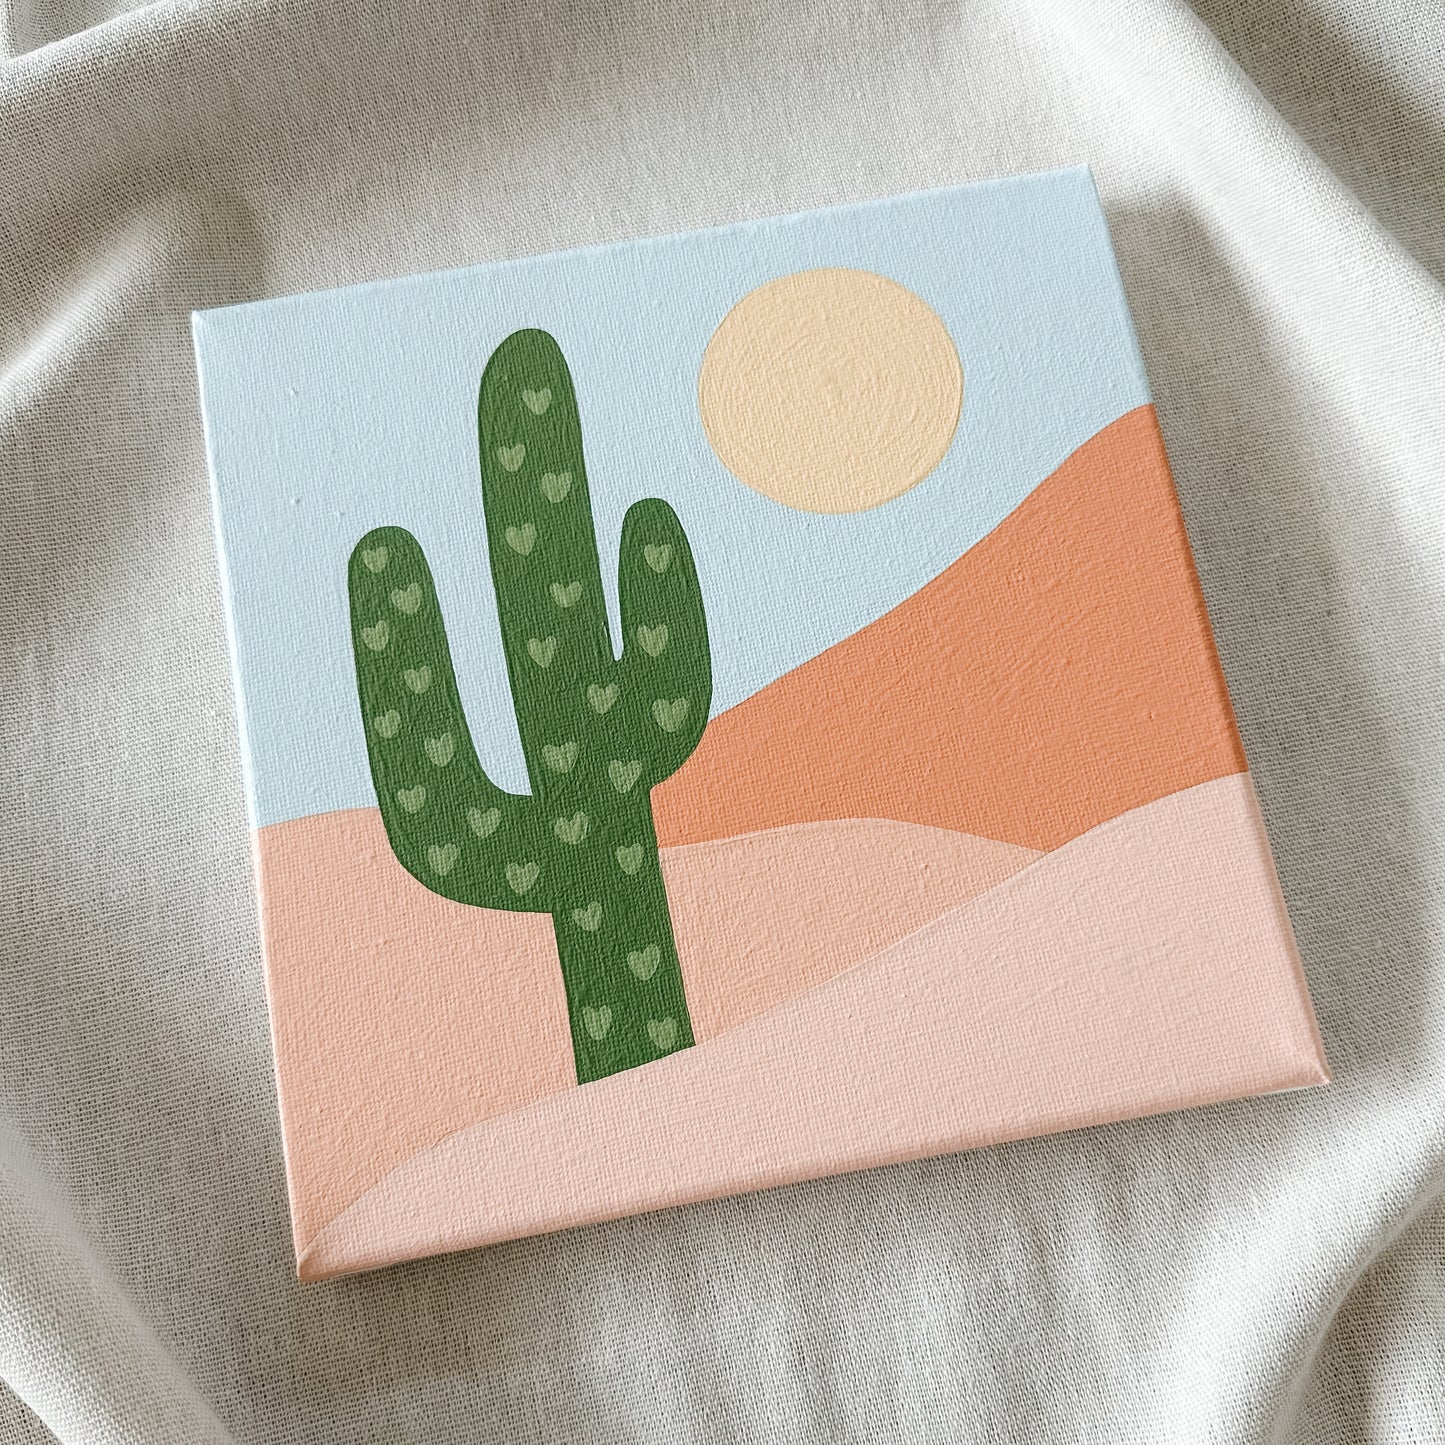 MÅLA ORIGINALS "Saguaro Desert" Paint by Number Kit